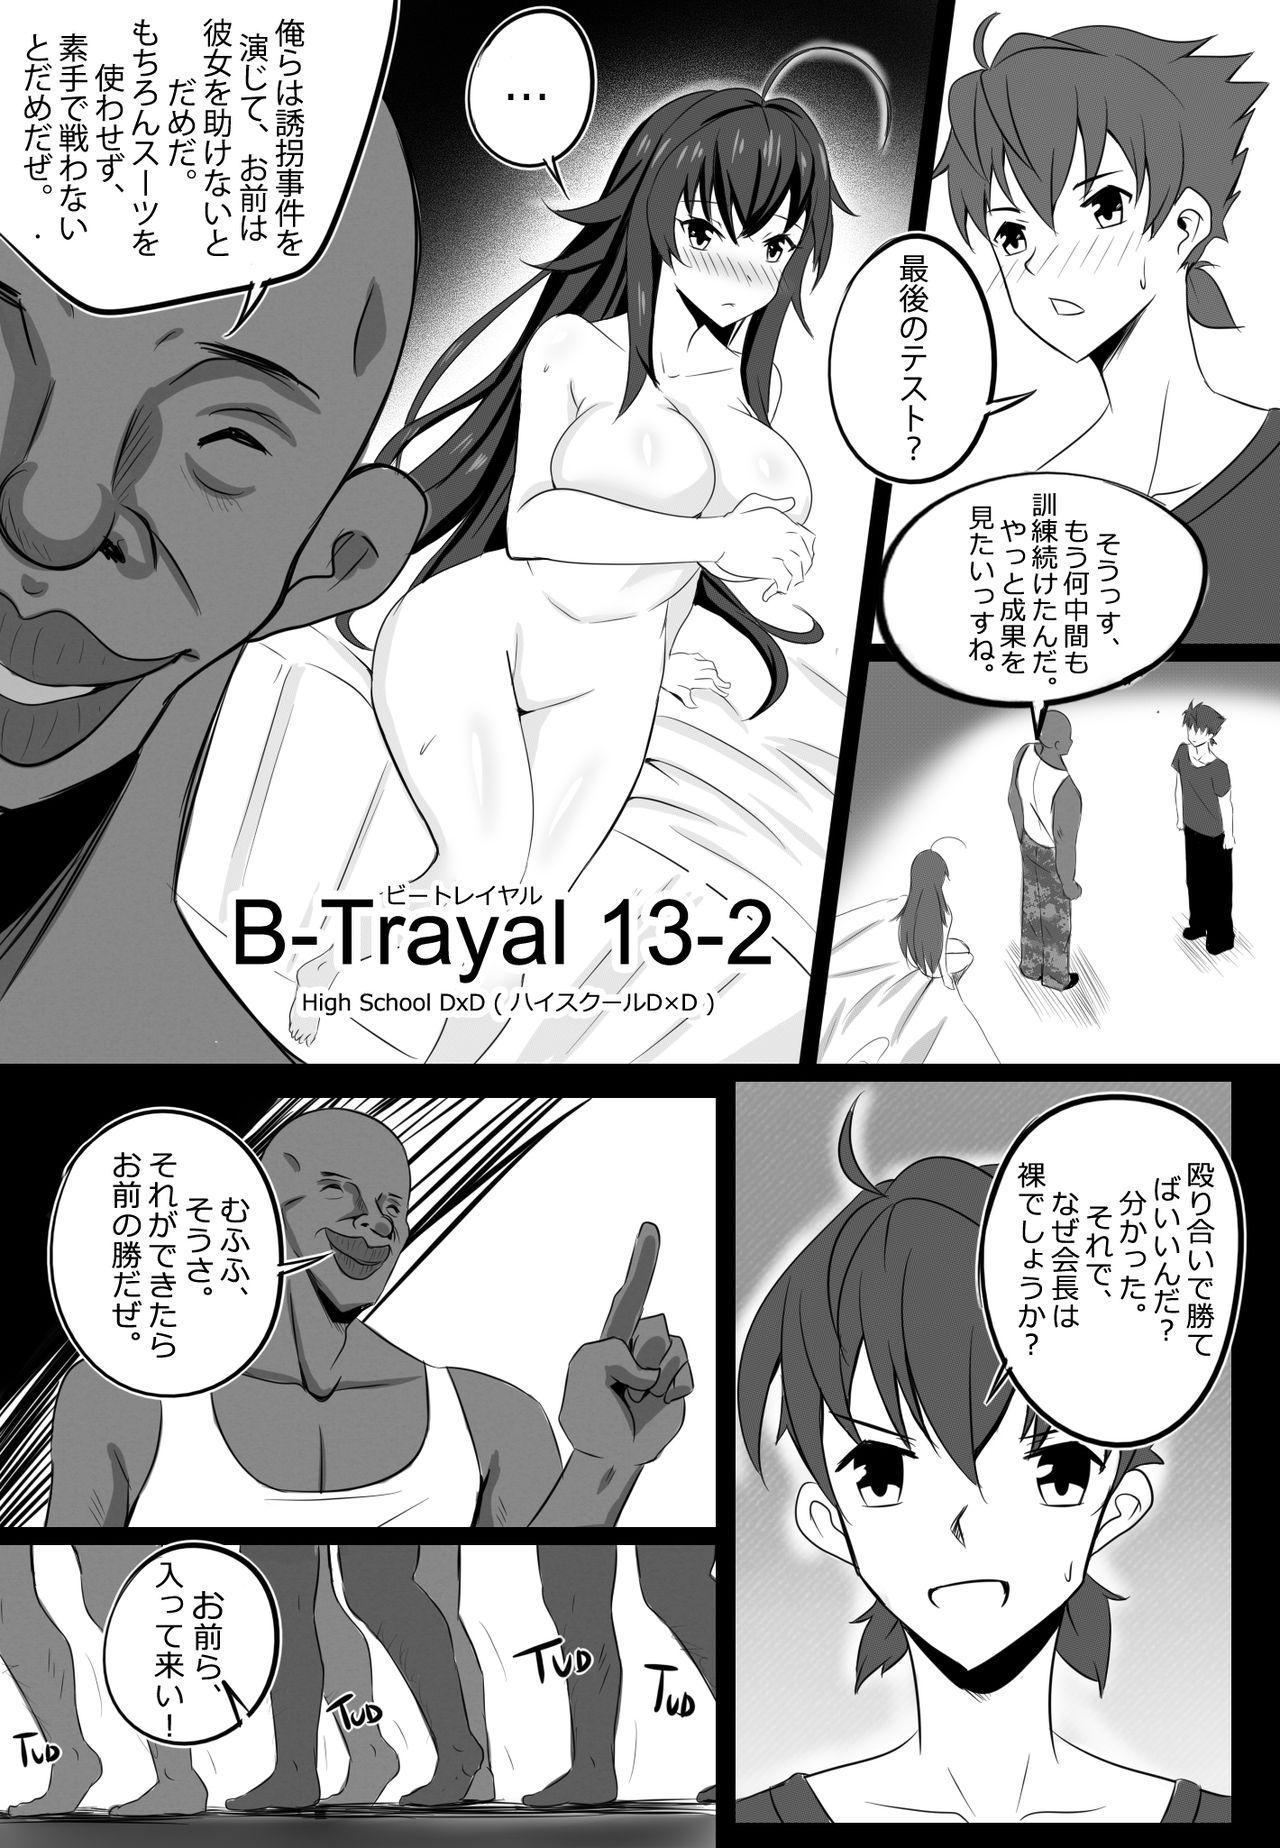 [Merkonig] B-Trayal 13-2 (Highschool DxD) 3